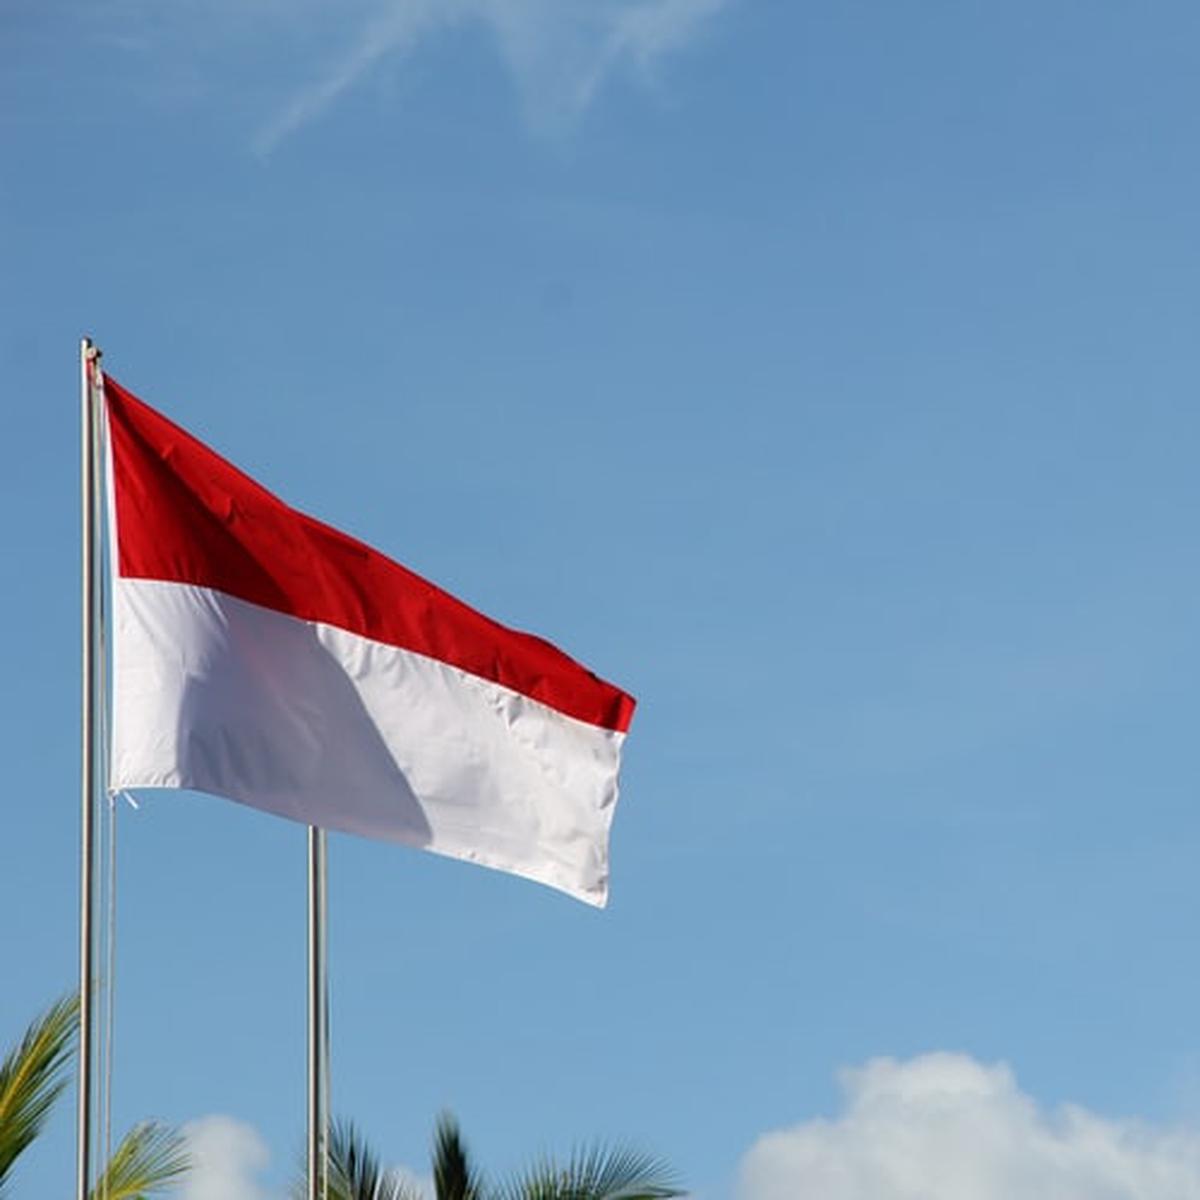 Salah satu alasan terpenting perlunya integrasi nasional di indonesia adalah untuk